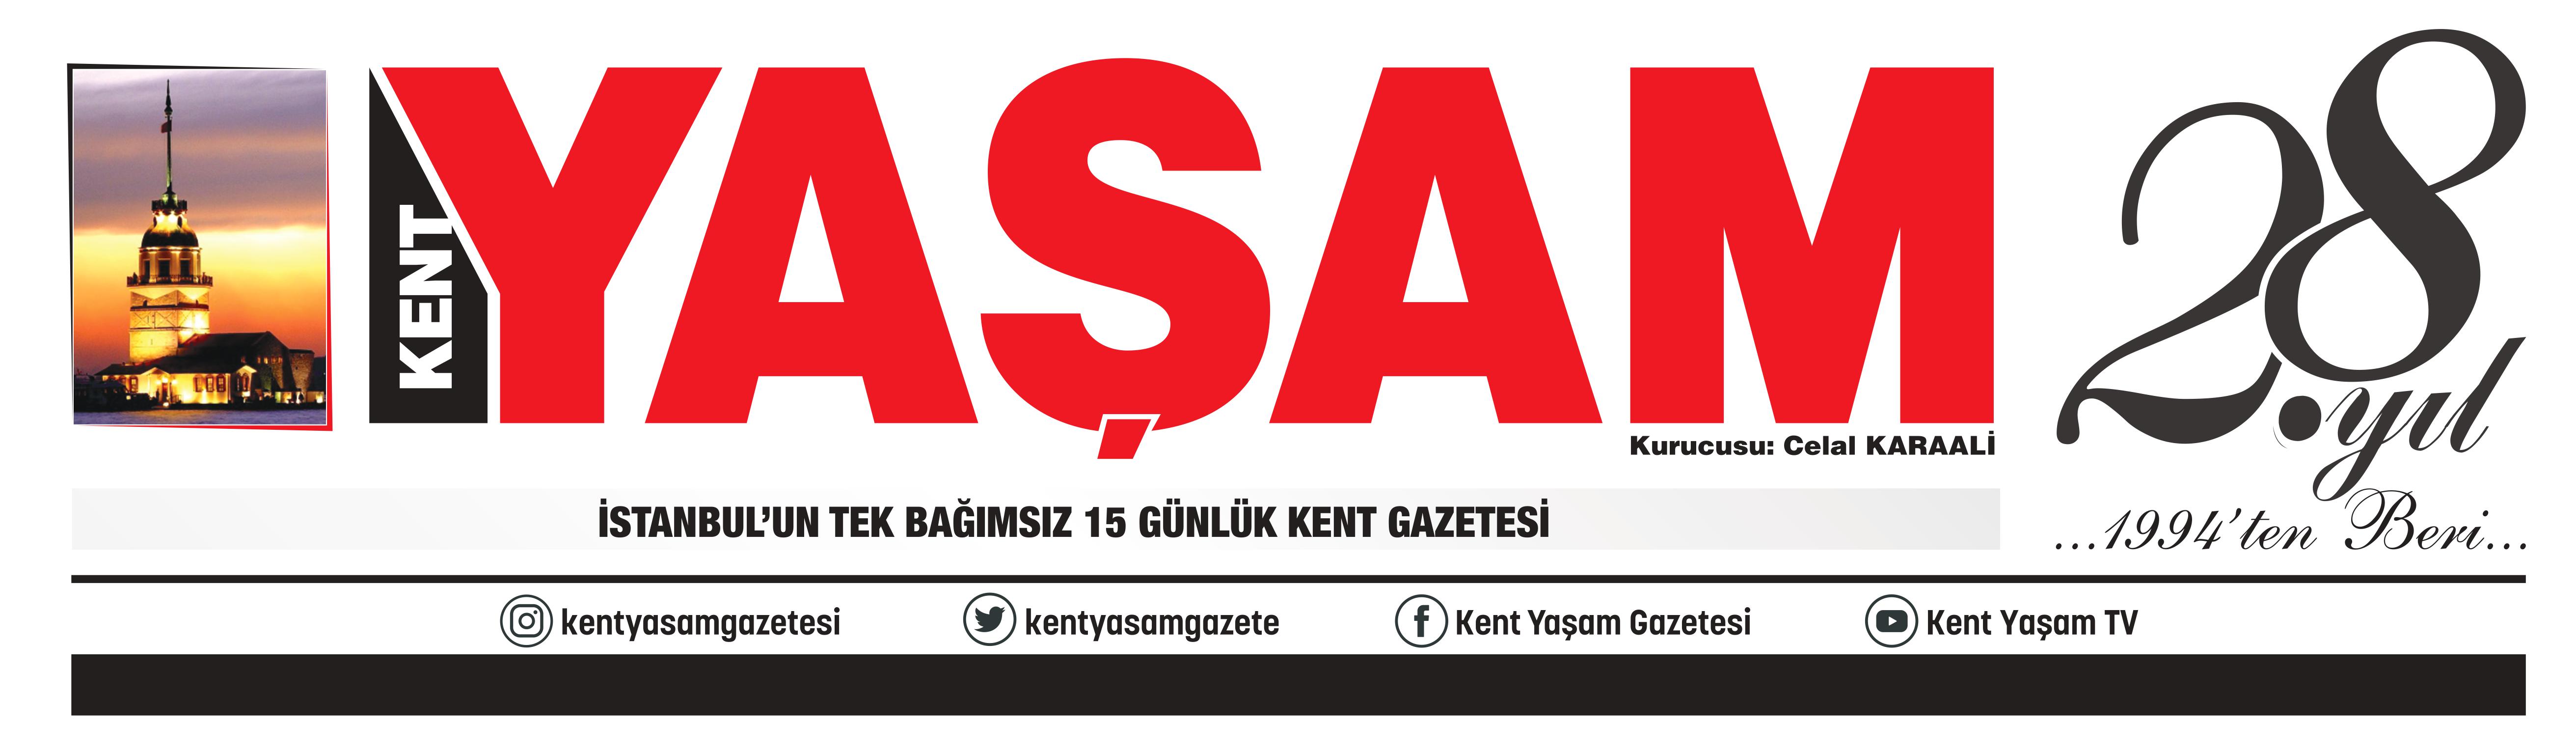 EVRİM TOK - Yaşam Gazetesi